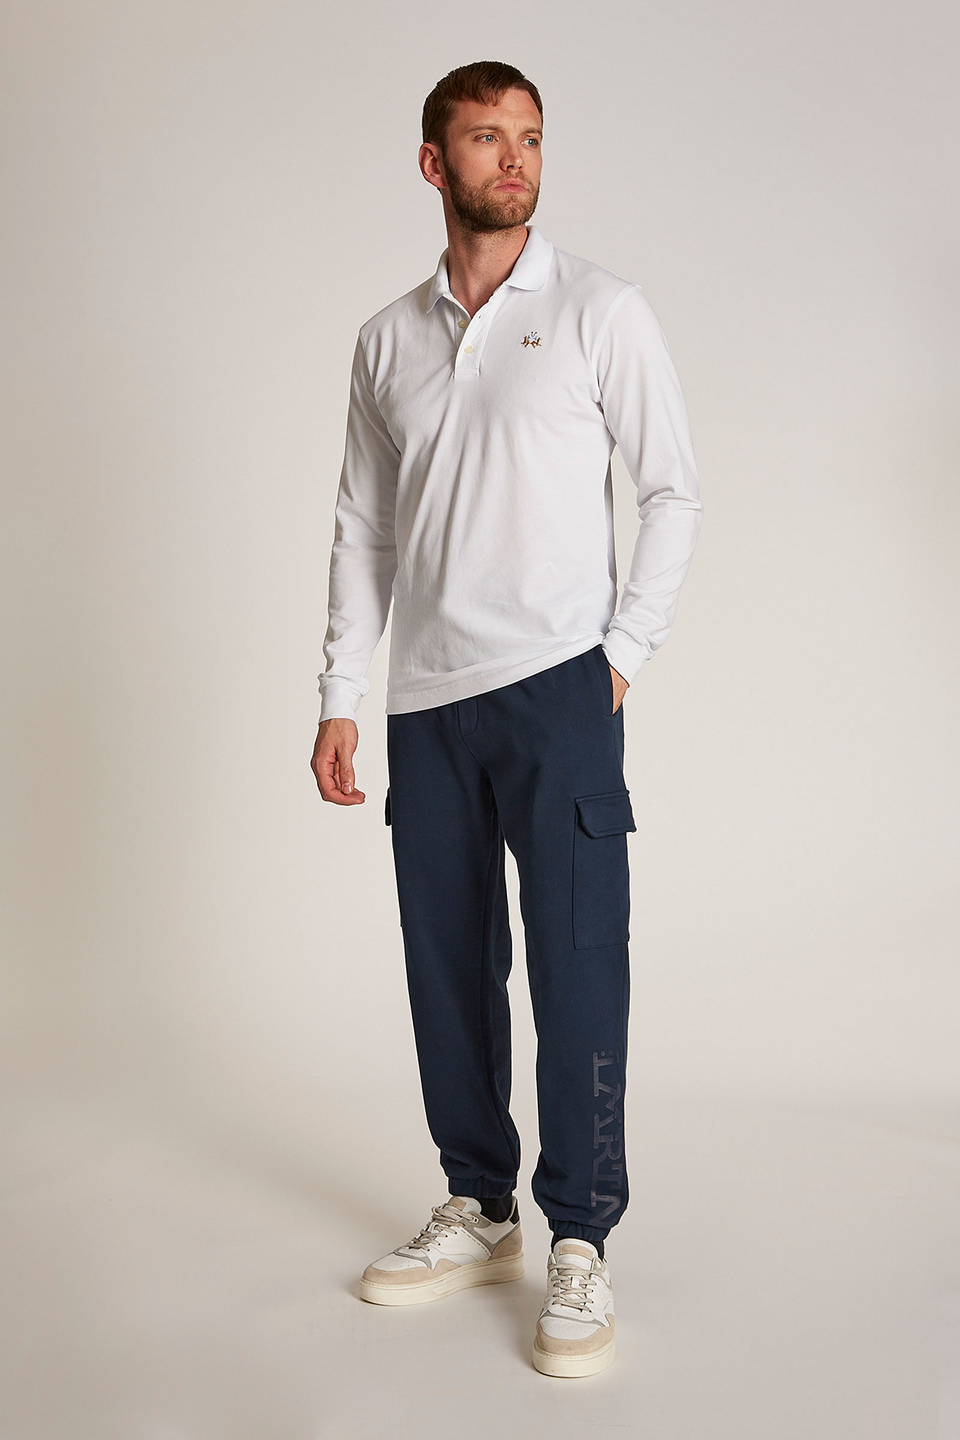 Pantalon homme style jogging en coton coupe oversize - La Martina - Official Online Shop